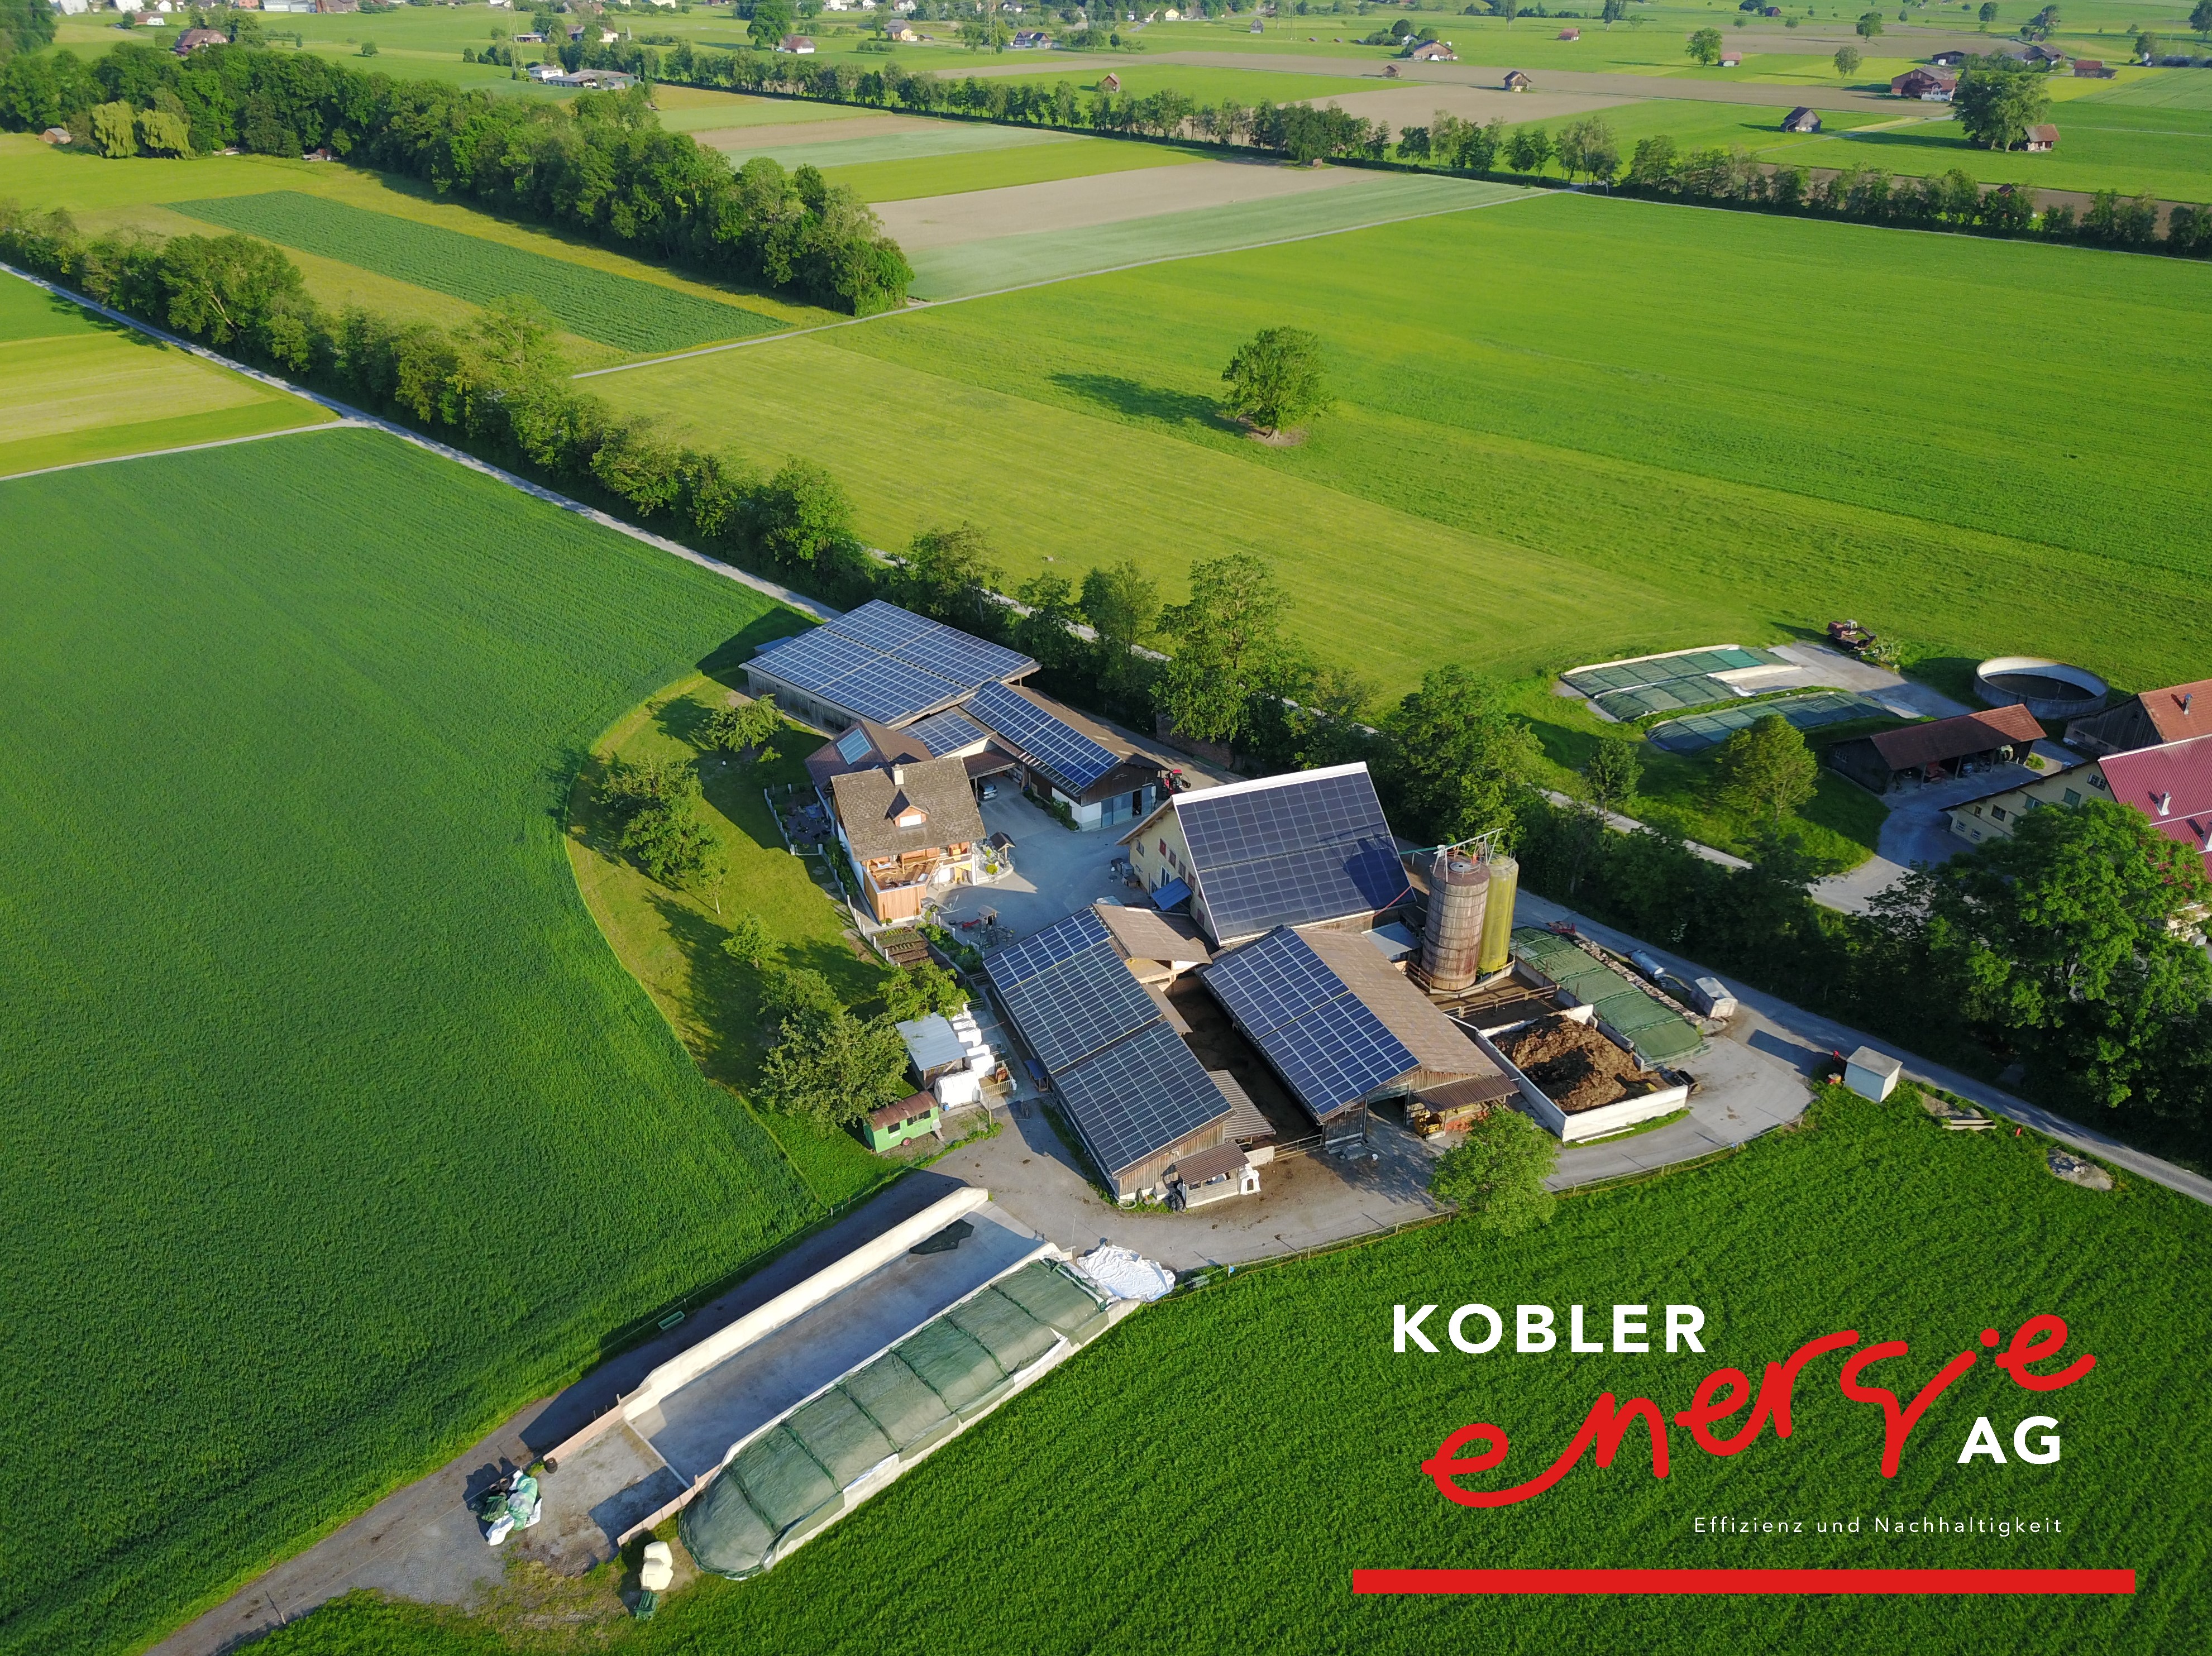 Fotos - Kobler Energie AG - 6